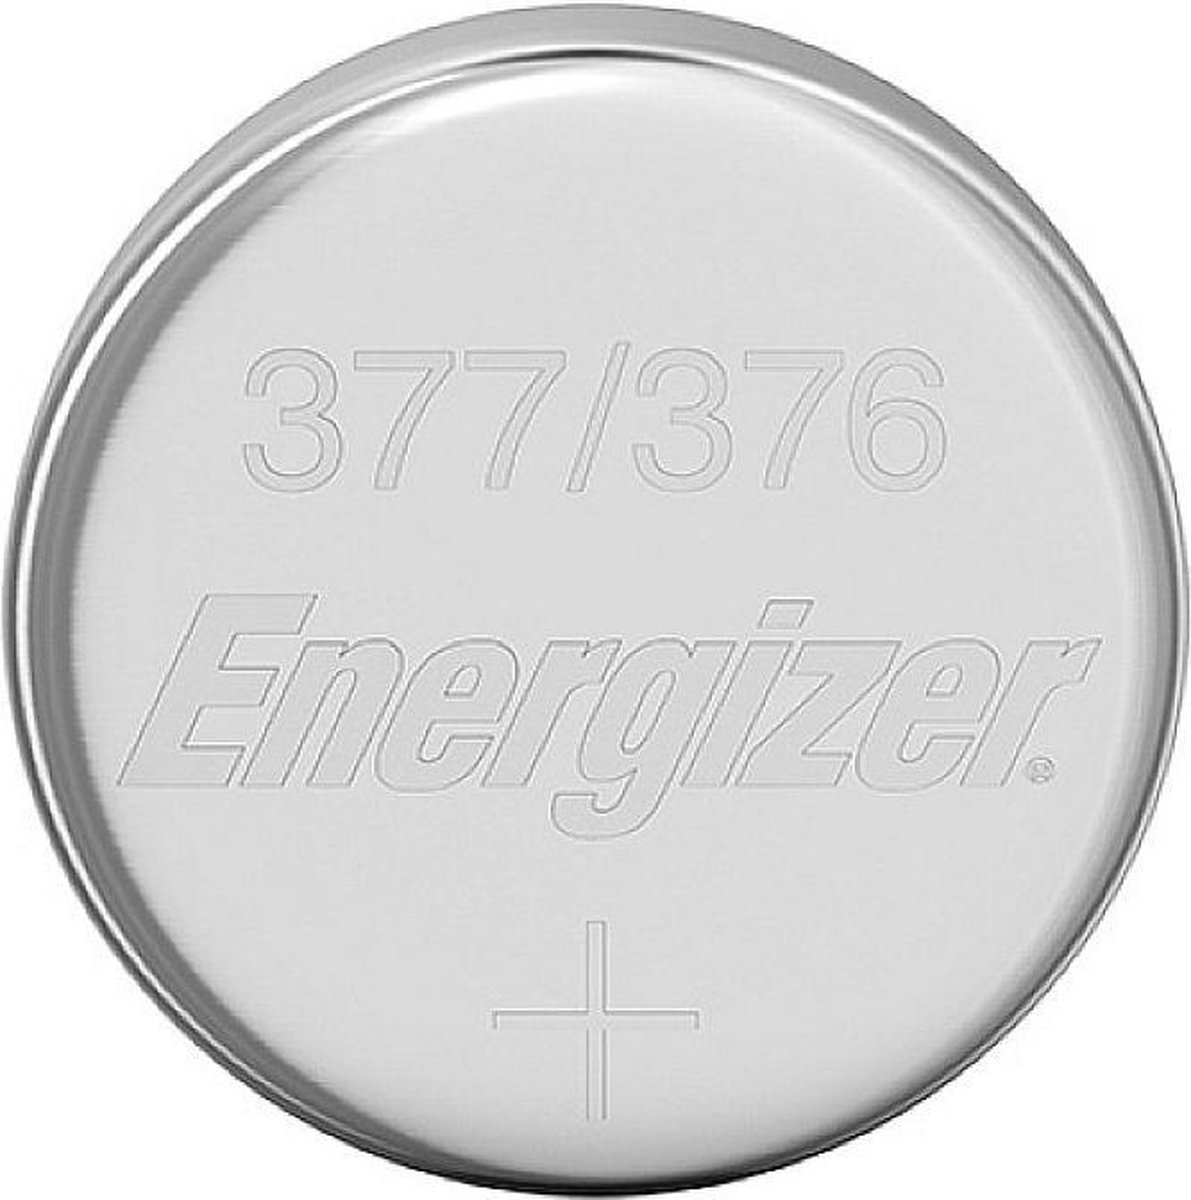 Energizer 377/376 SR626W/SW zilveroxide knoopcel horlogebatterij 2 stuks